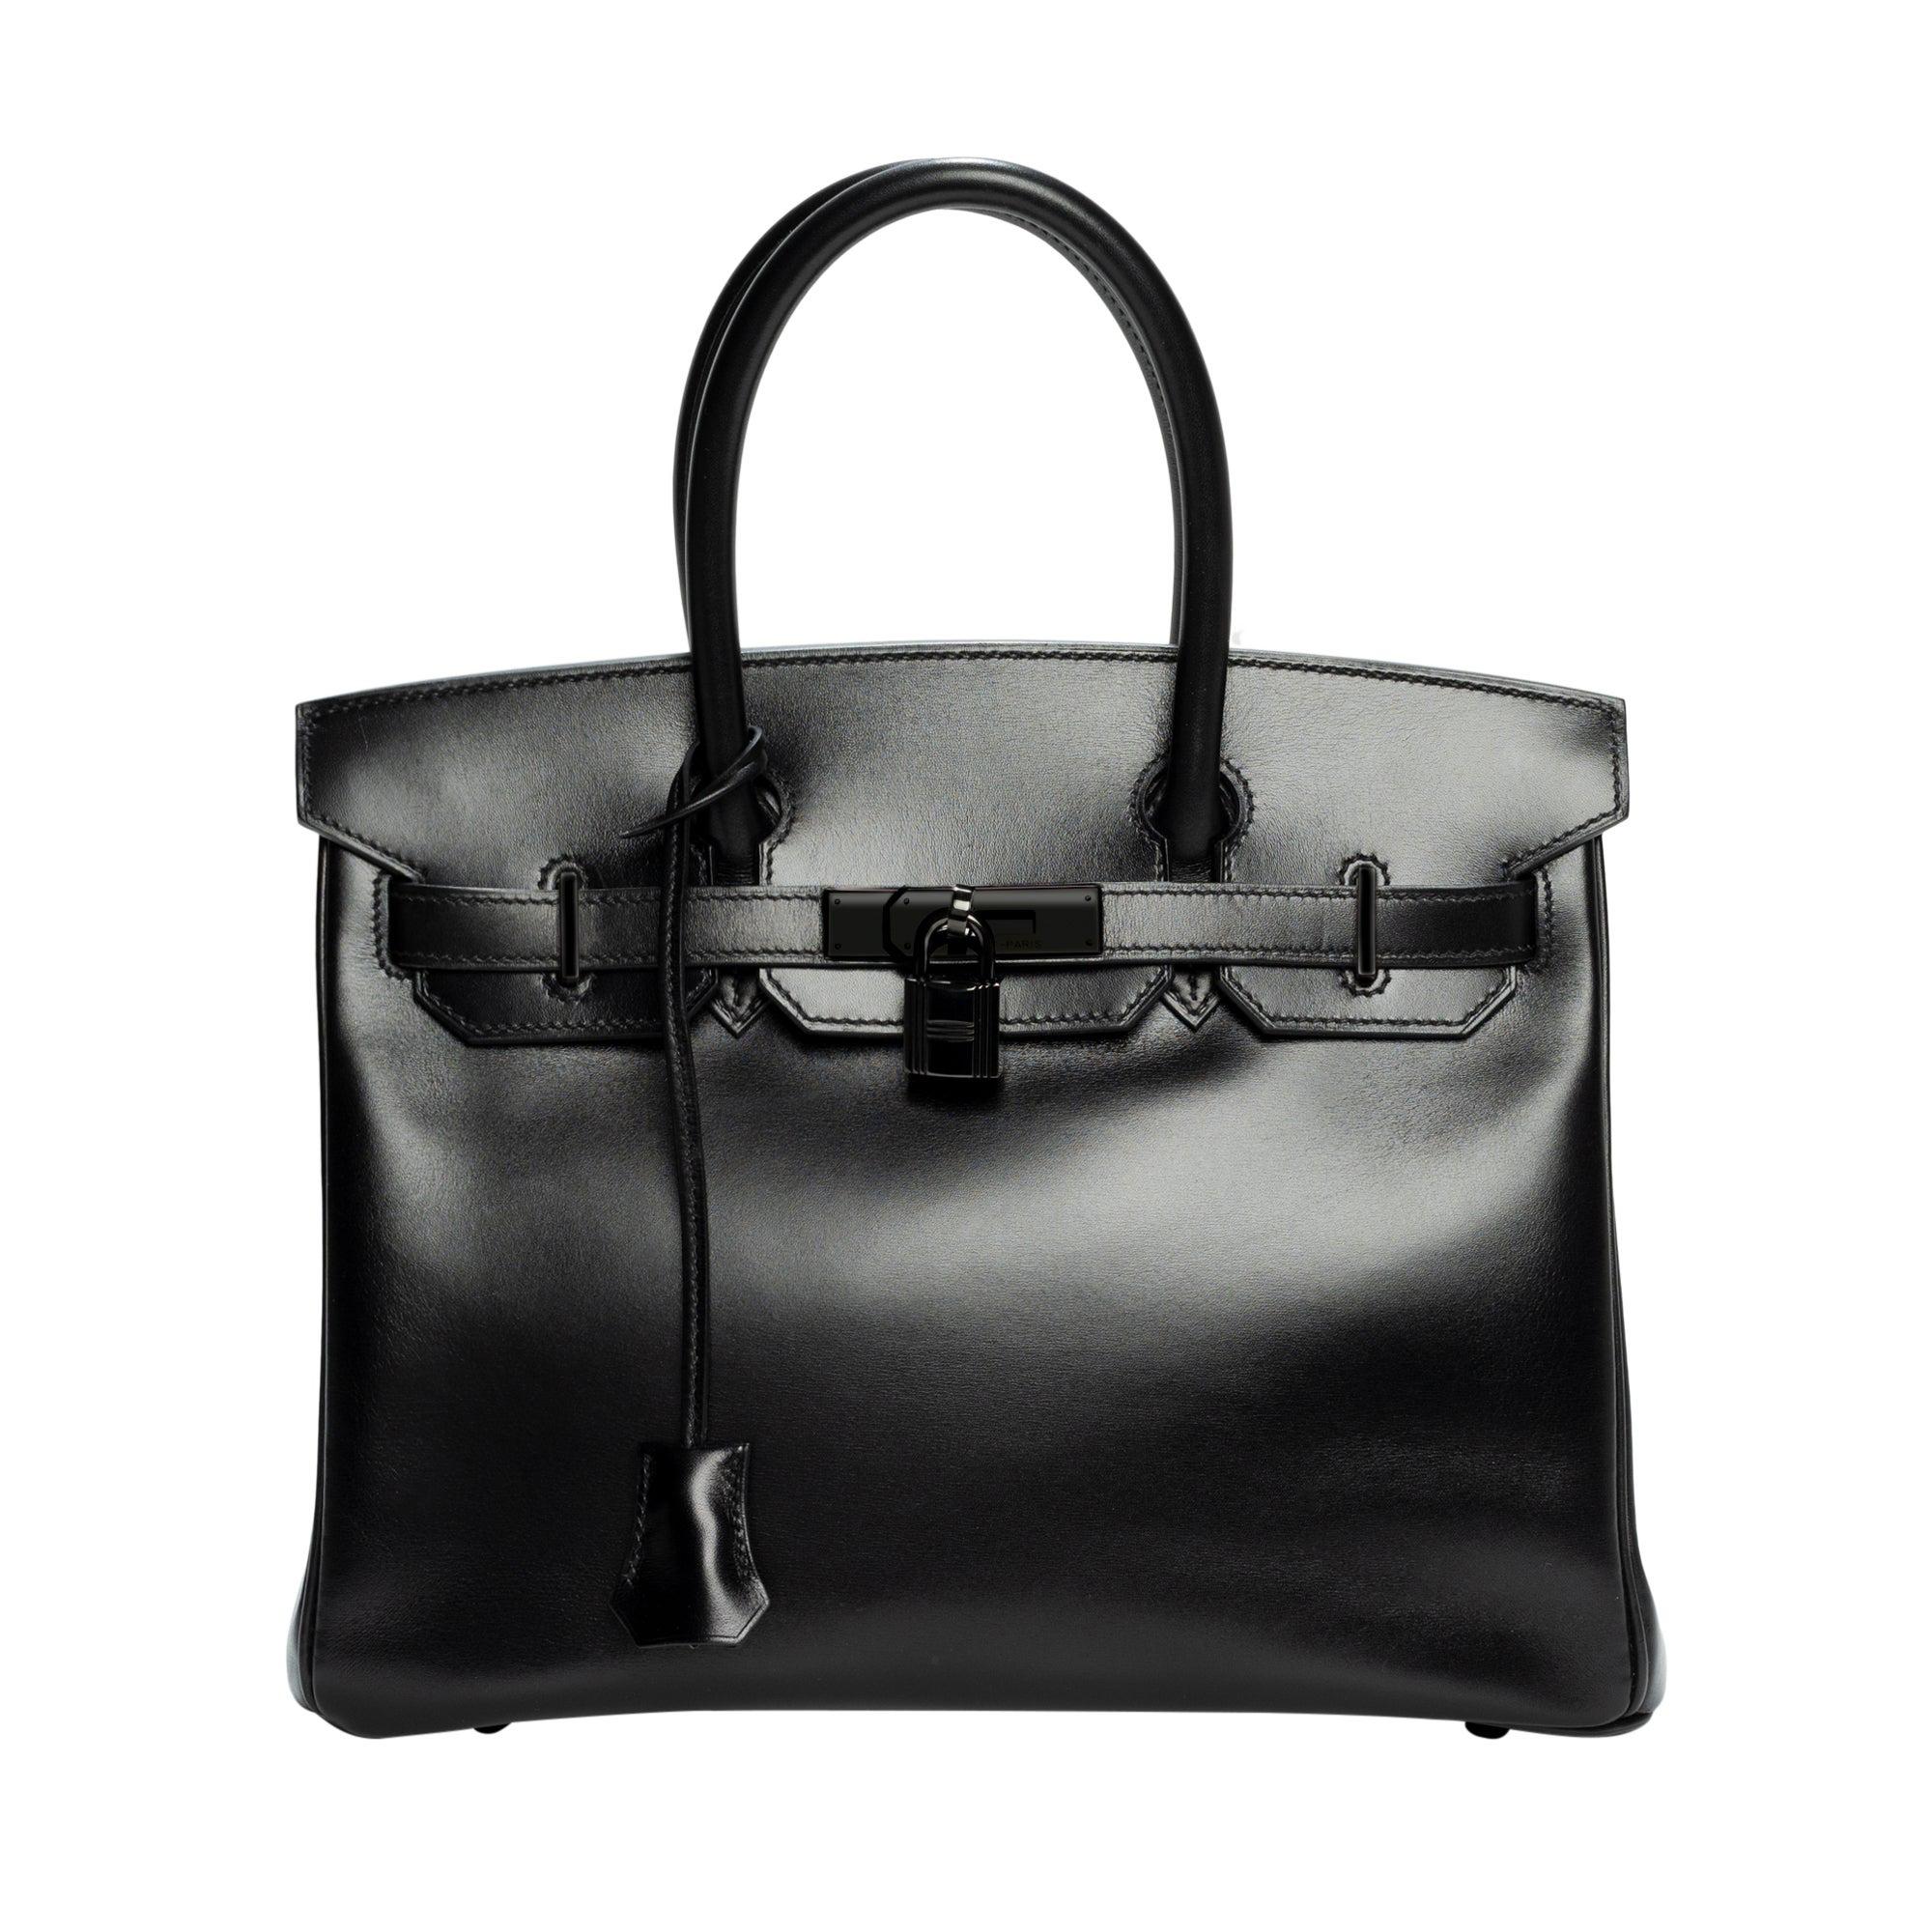 Very Rare and wanted Hermès Birkin 30 SO BLACK handbag full set at 1stDibs